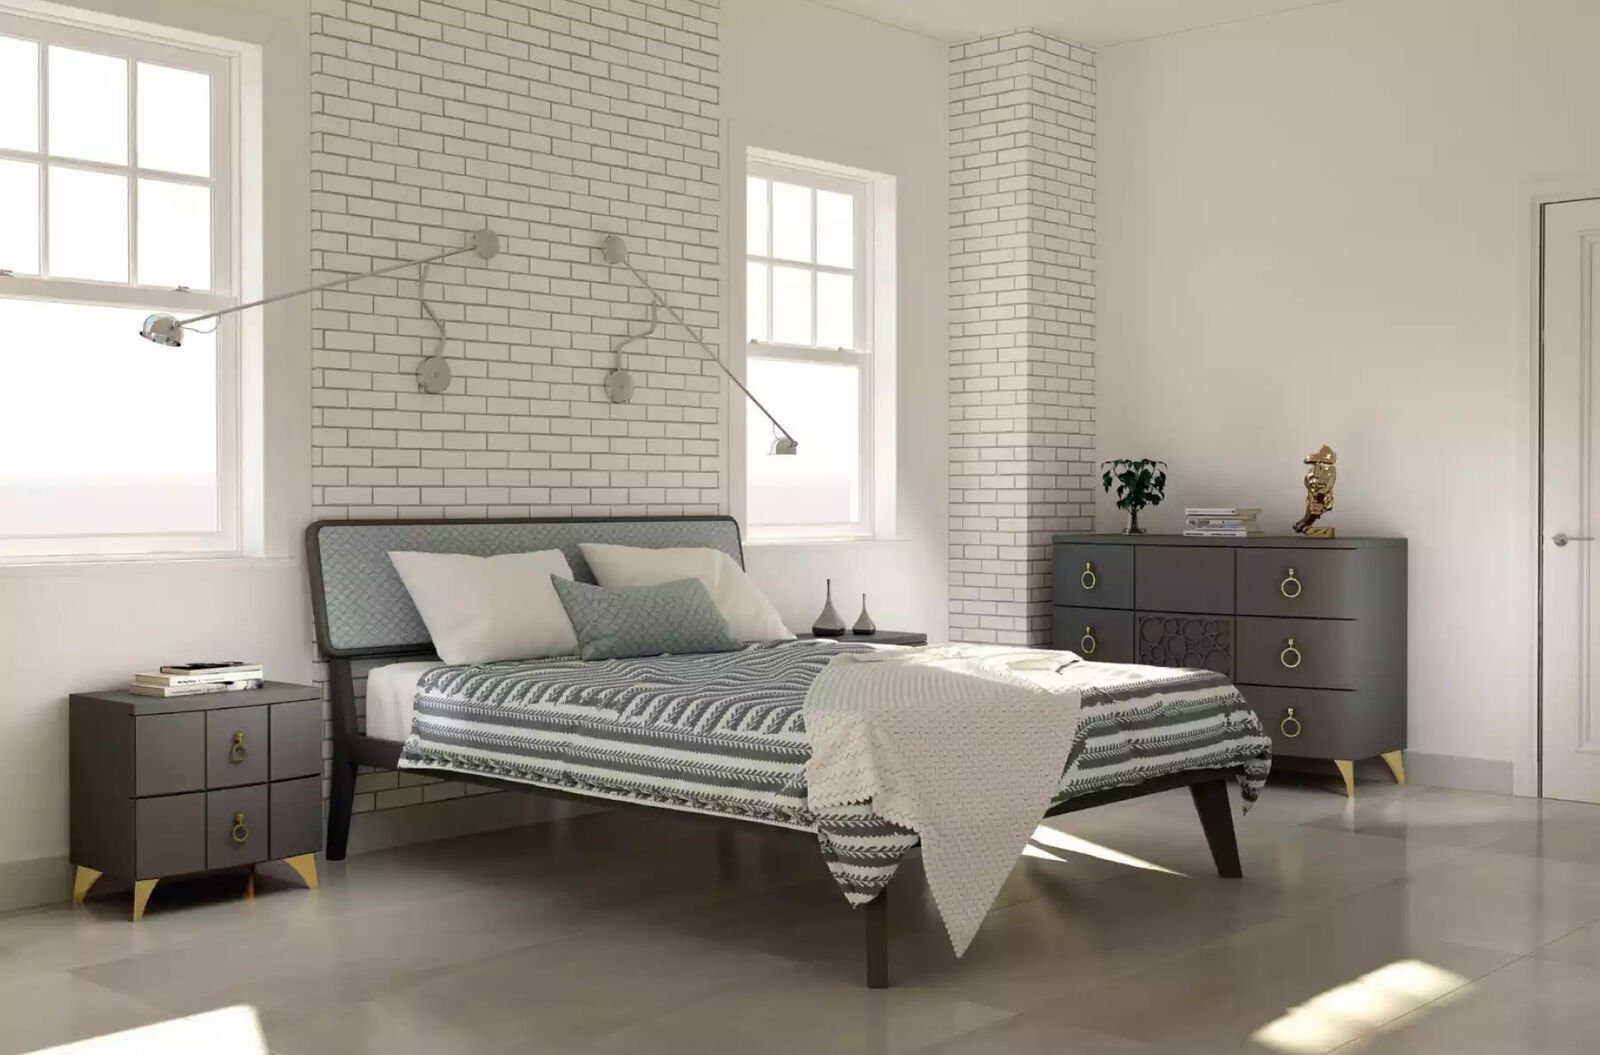 Holz, Italy Modernes Schlafzimmer Design Made JVmoebel in Nachttisch grau Beistelltisch neu Nachttisch